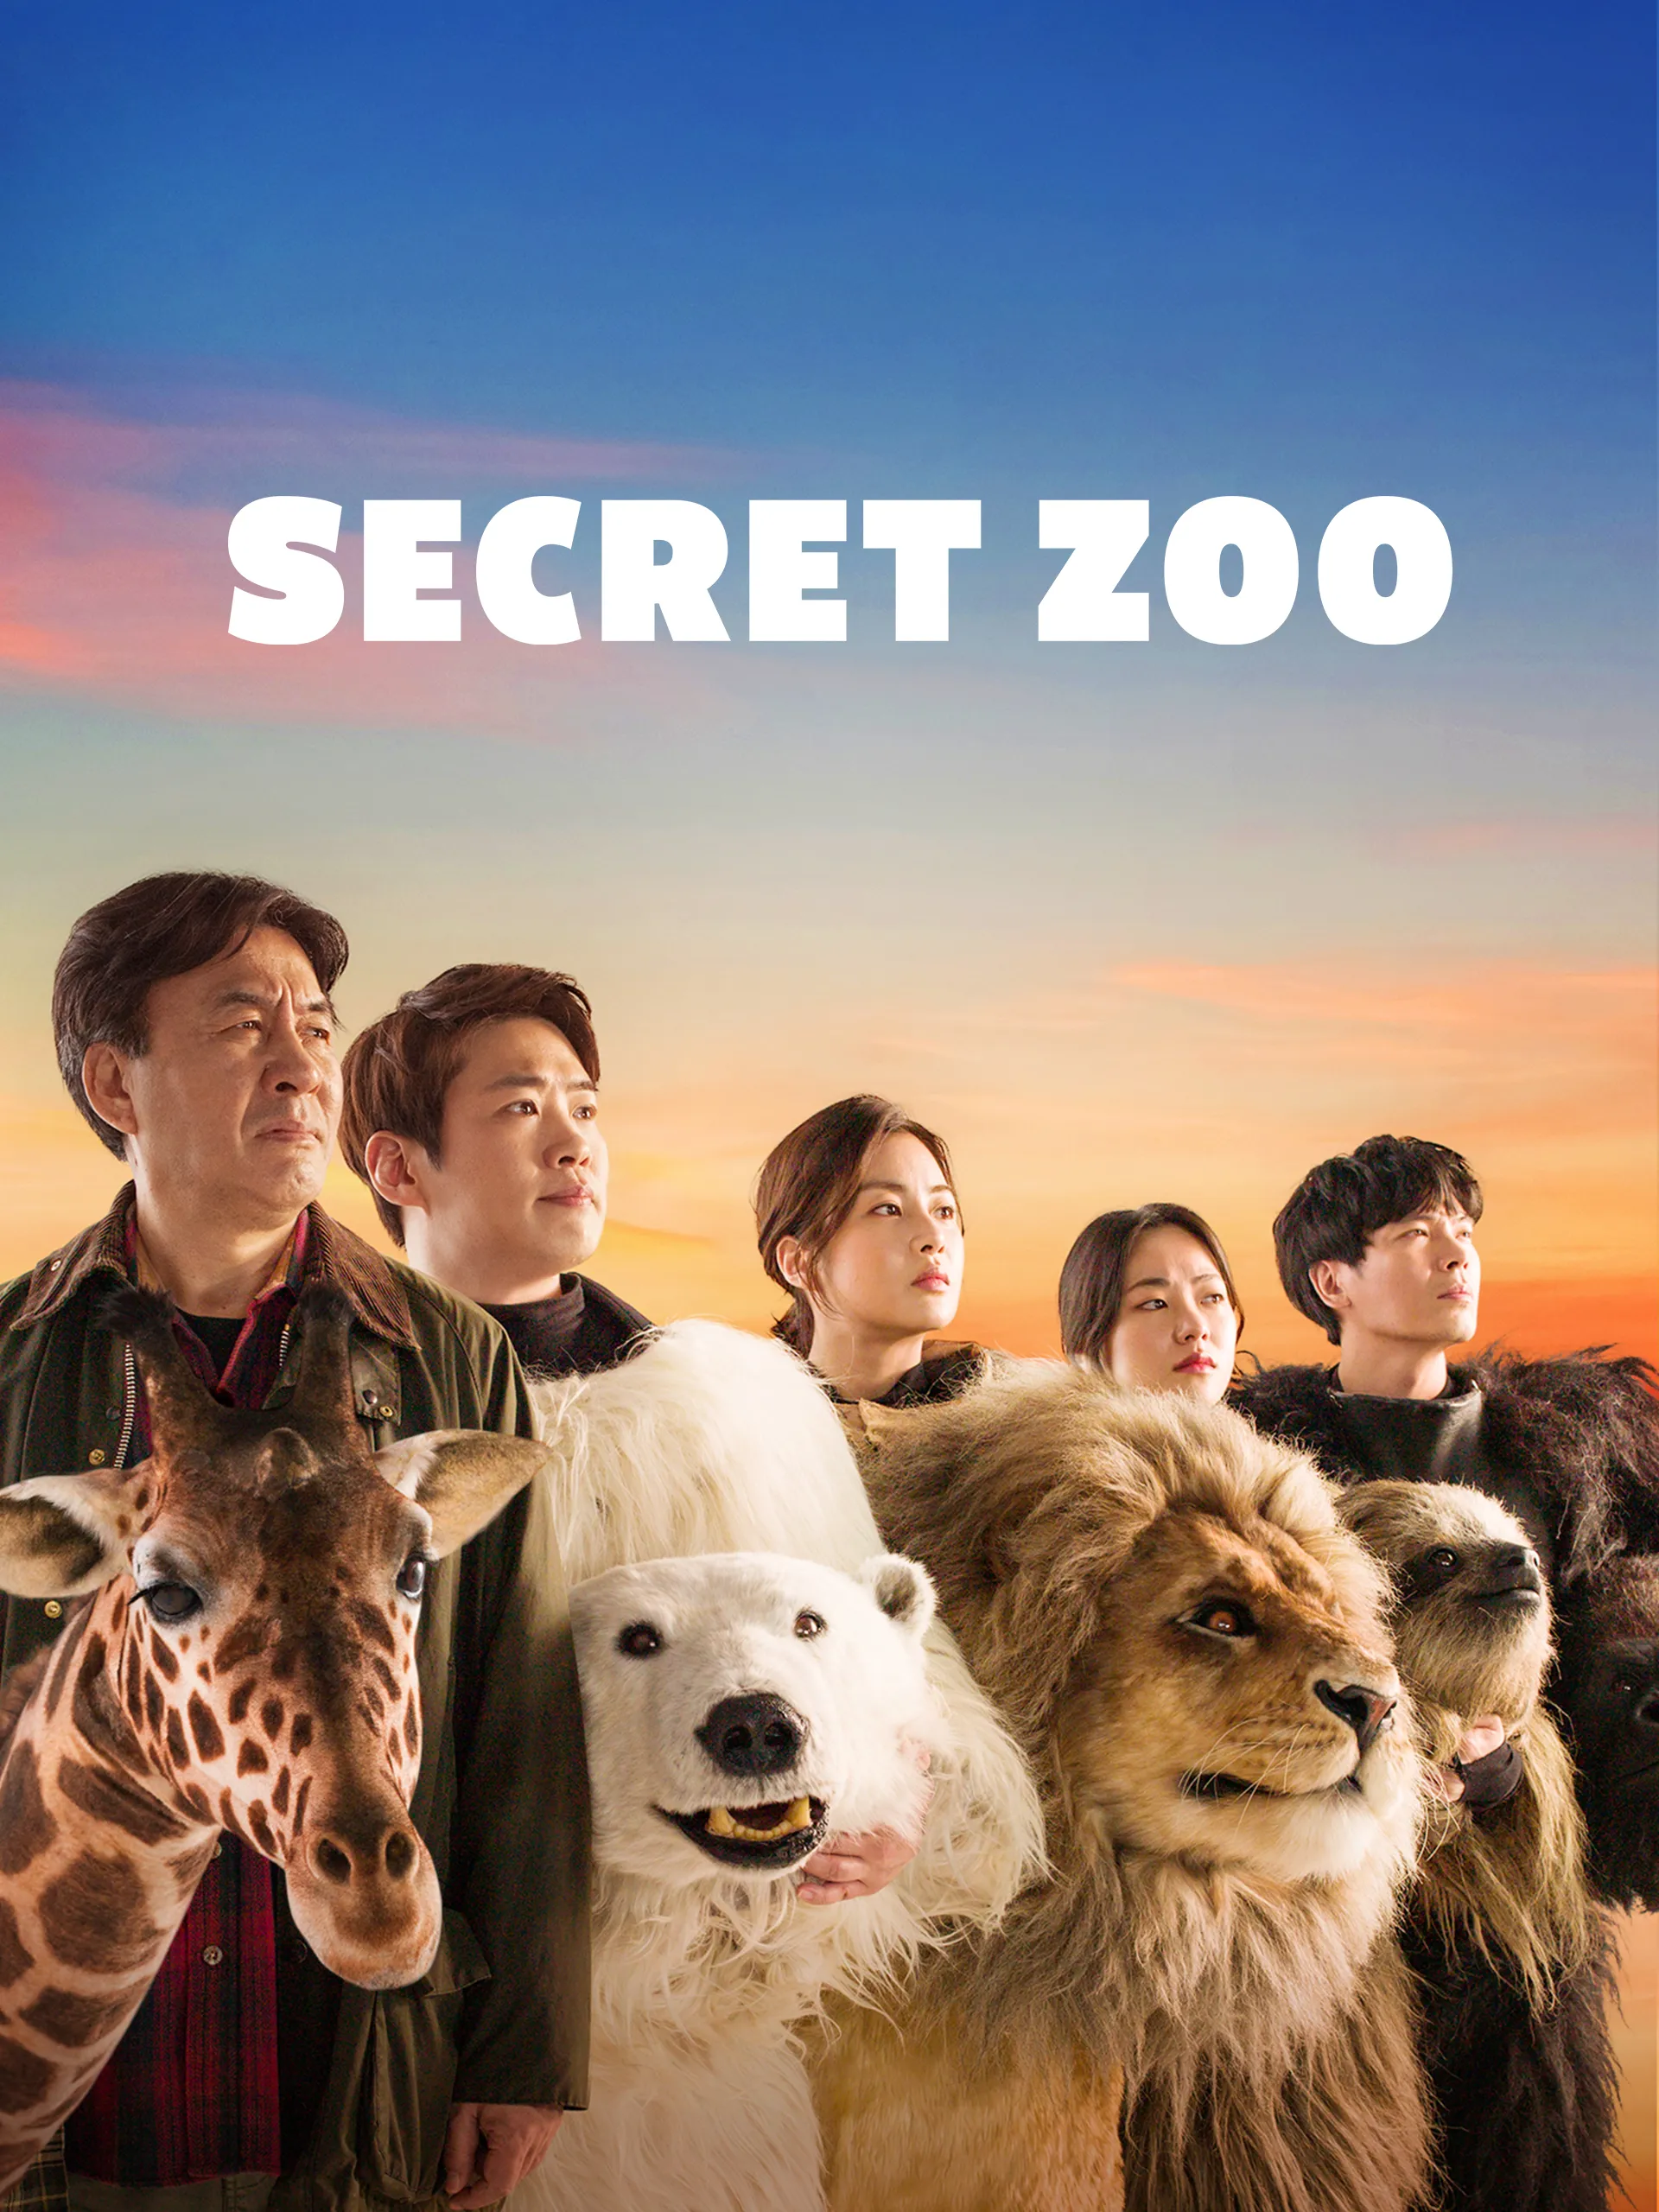 Dónde puedo ver Secret Zoo en español